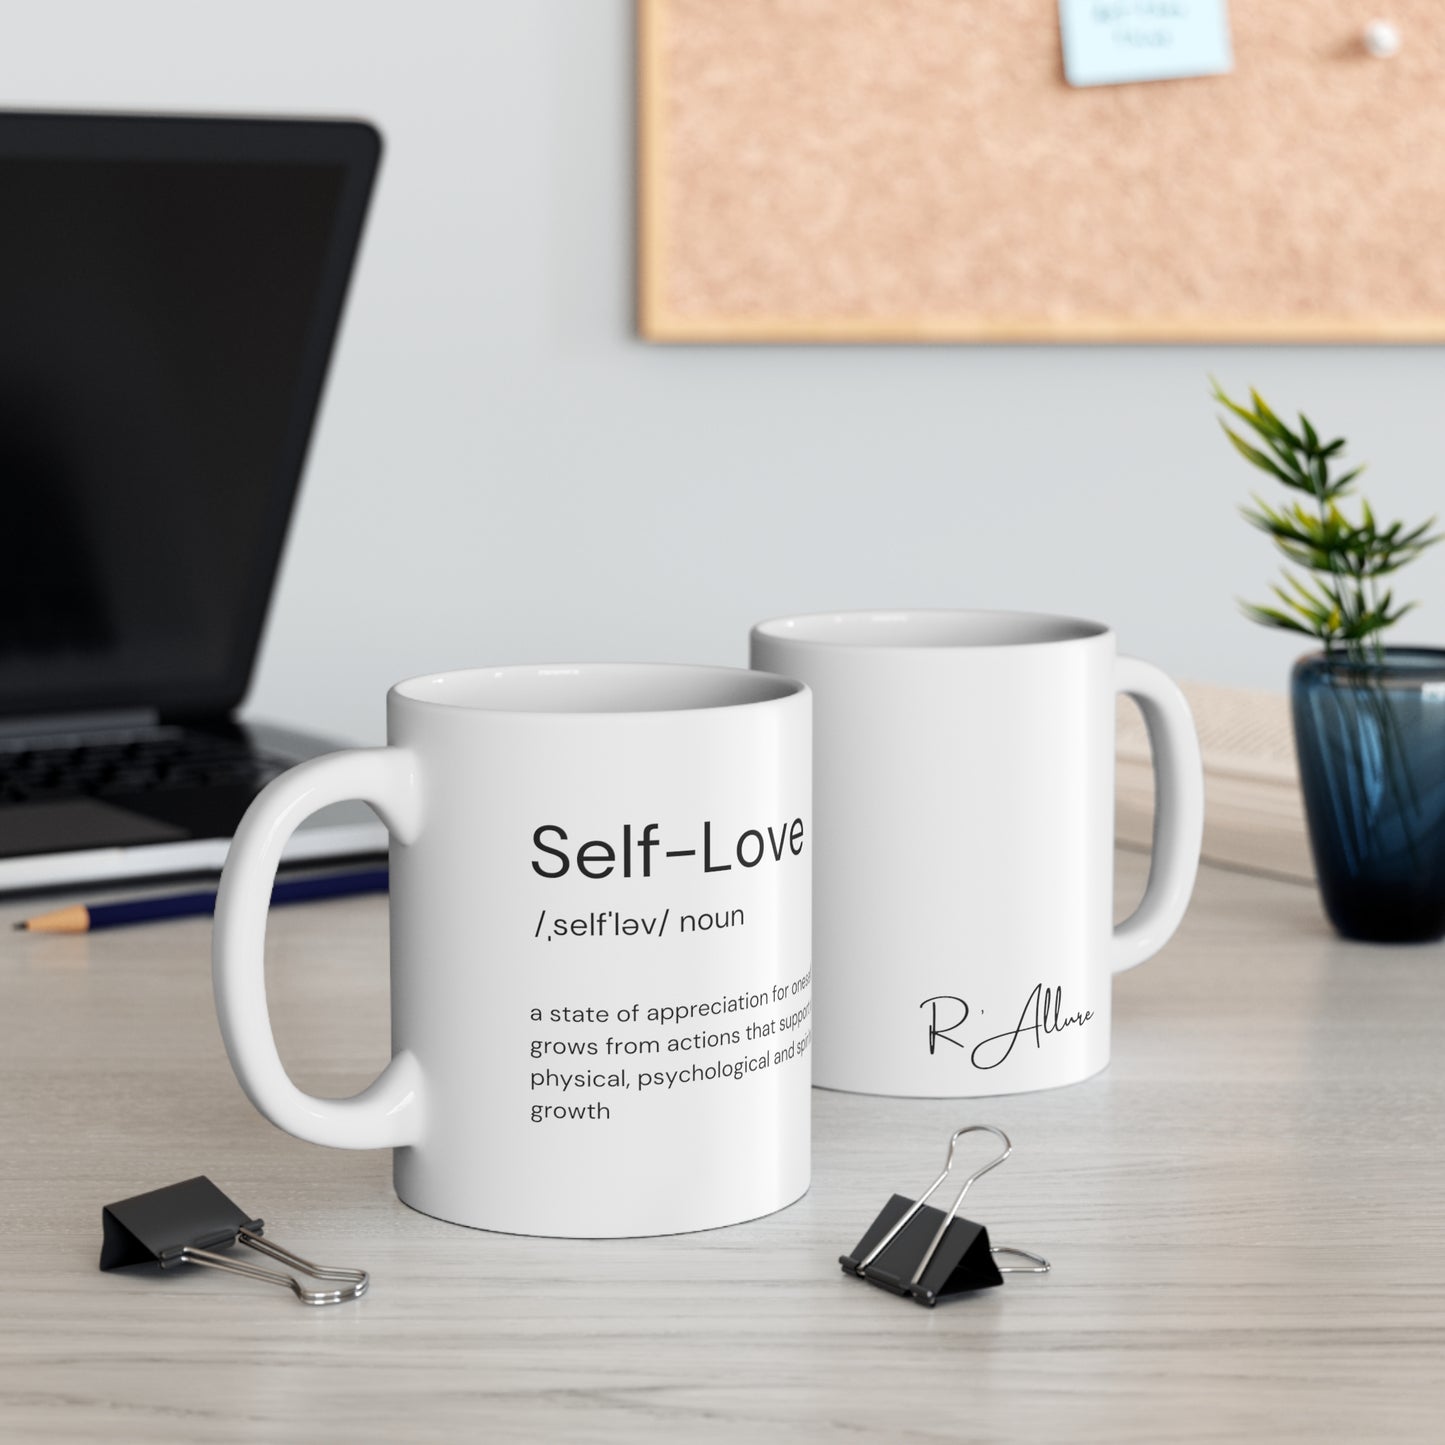 11oz Self-Love White Ceramic Mug